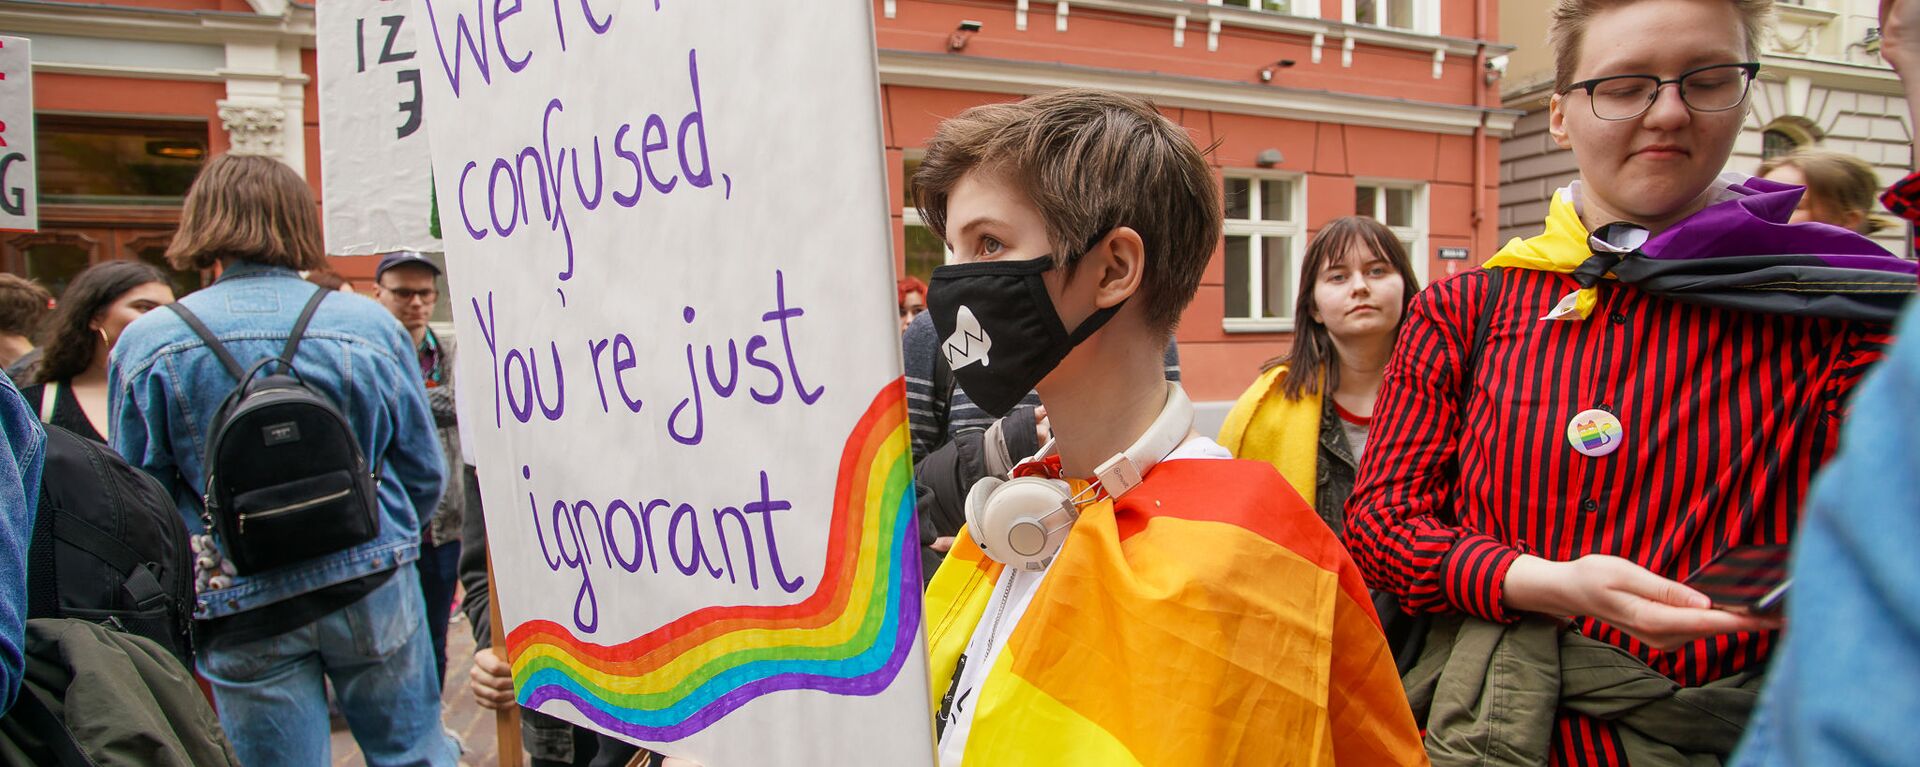  Пикет молодежной организации Протест за права представителей ЛГБТ - Sputnik Латвия, 1920, 12.05.2021